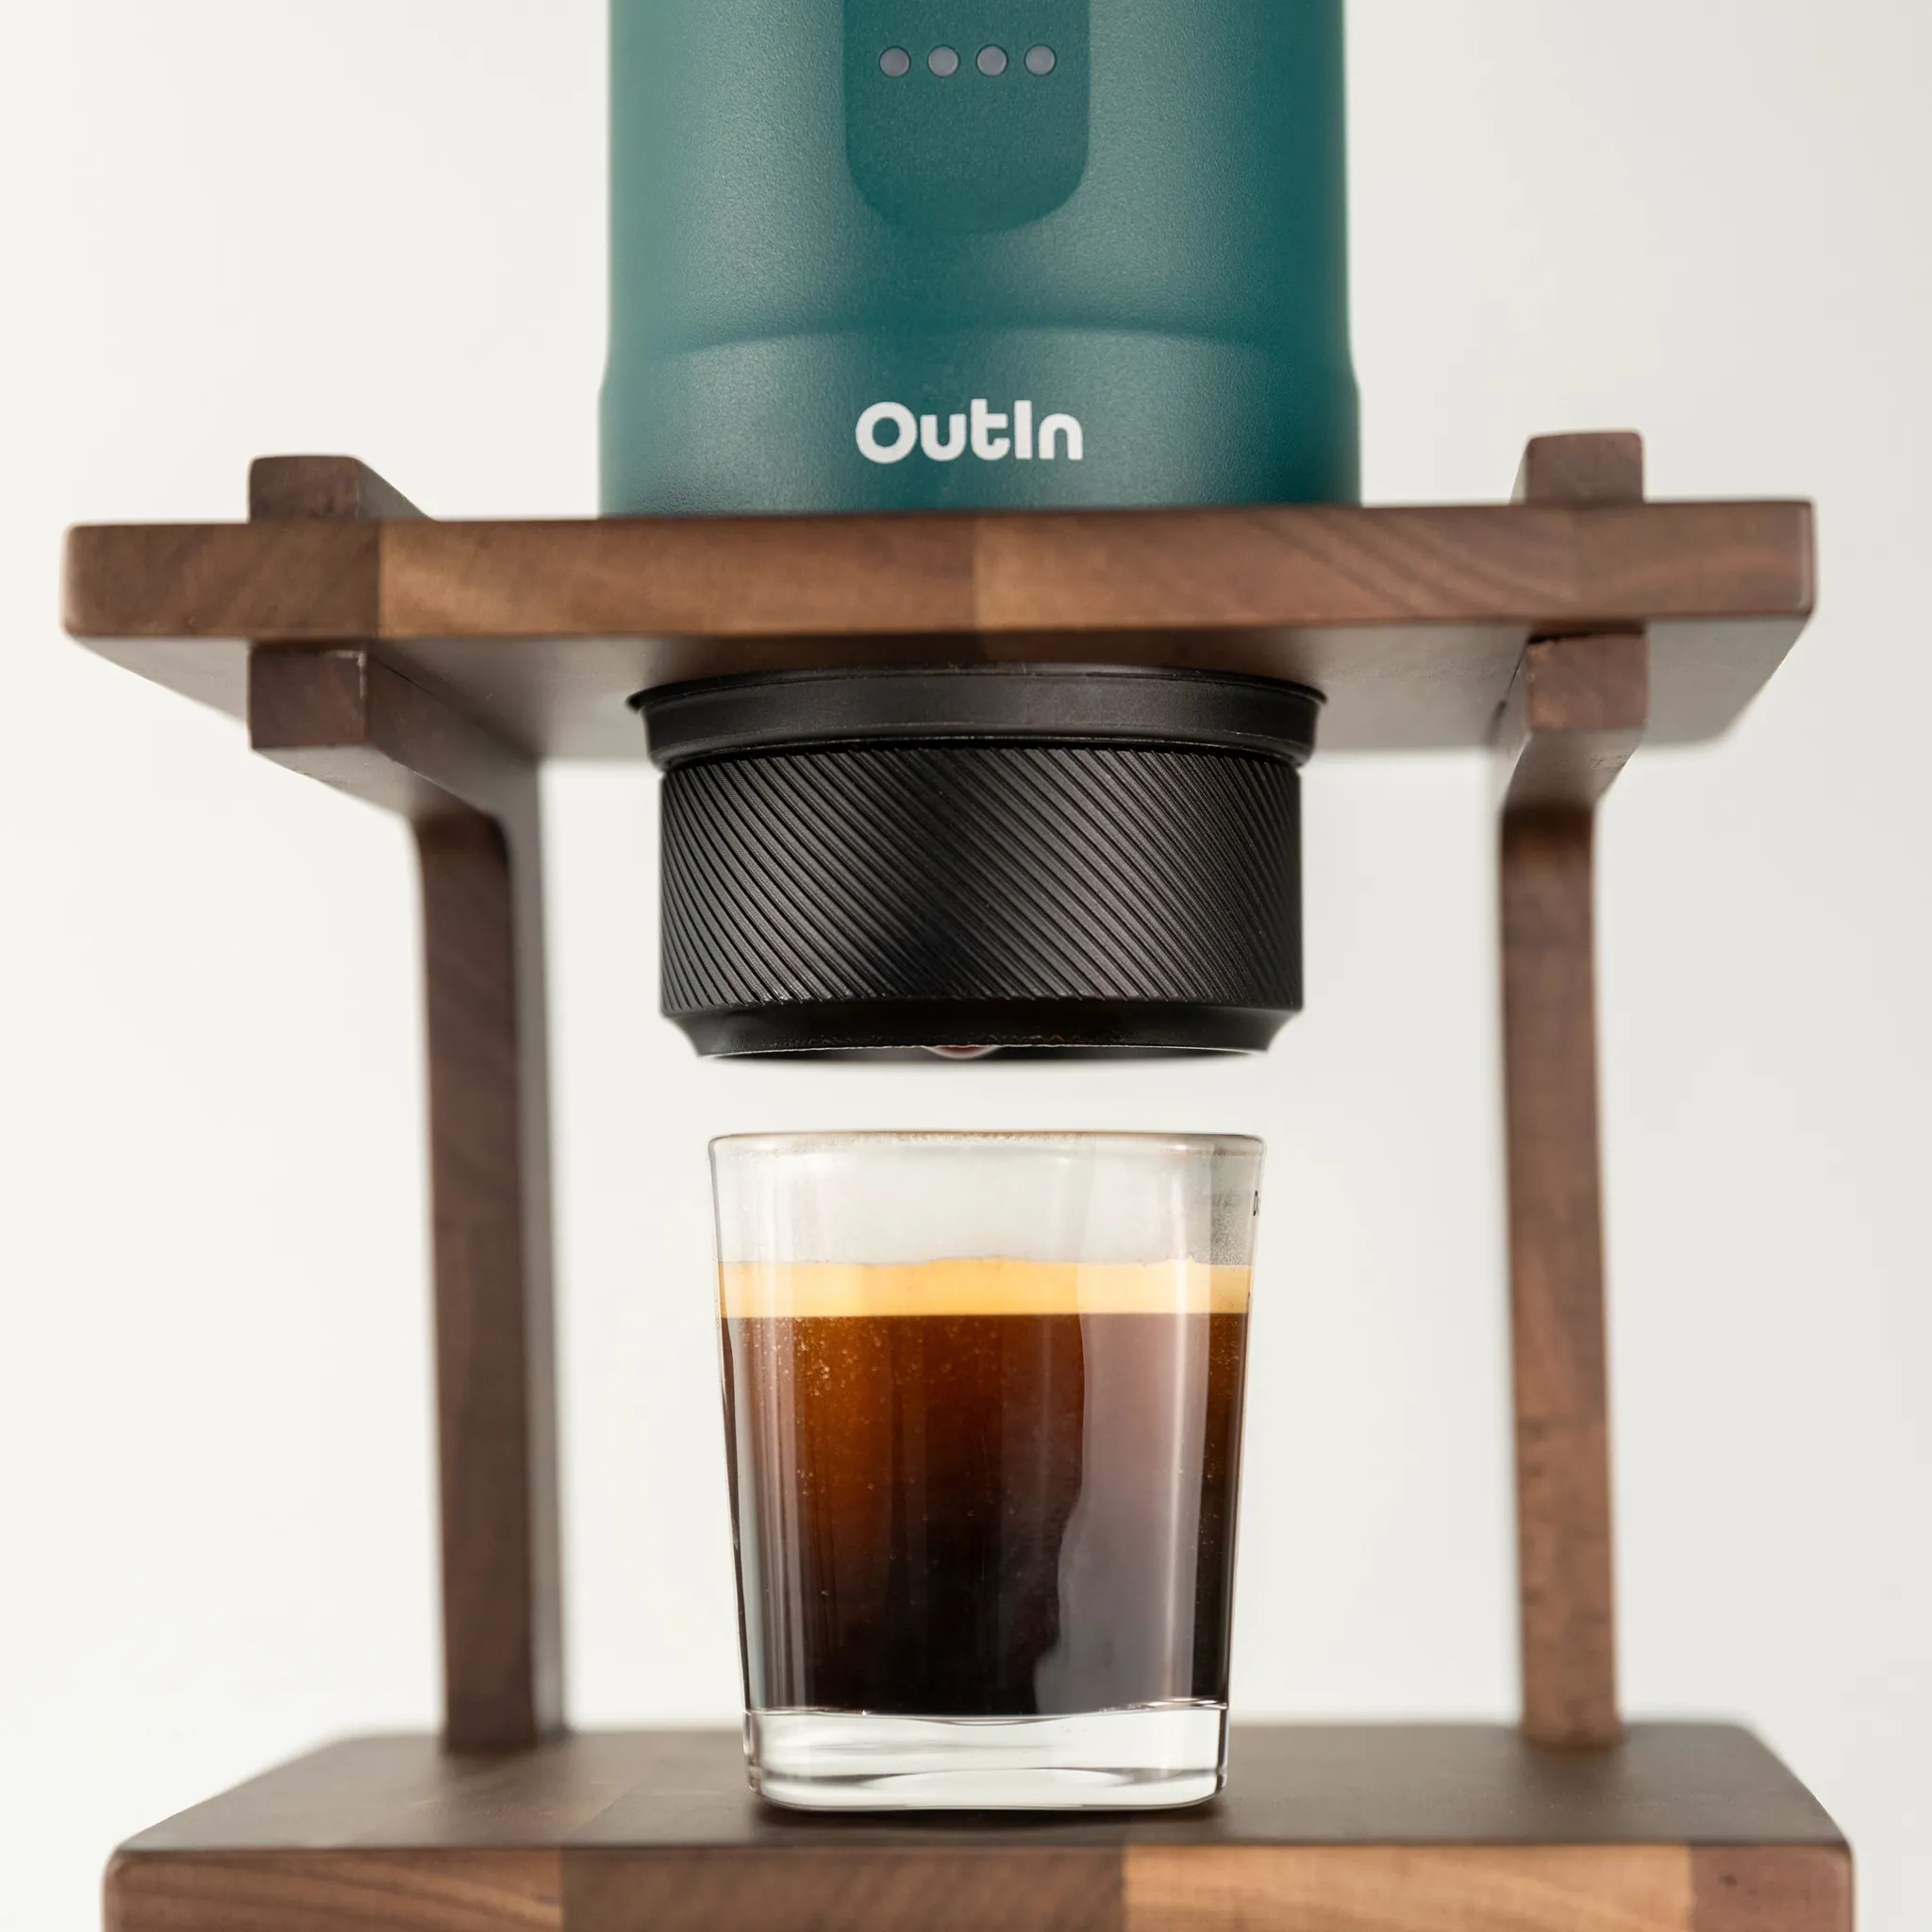 Hướng dẫn sử dụng Bộ kit nâng cấp Outin Basket Plus cho máy pha cafe Outin Nano